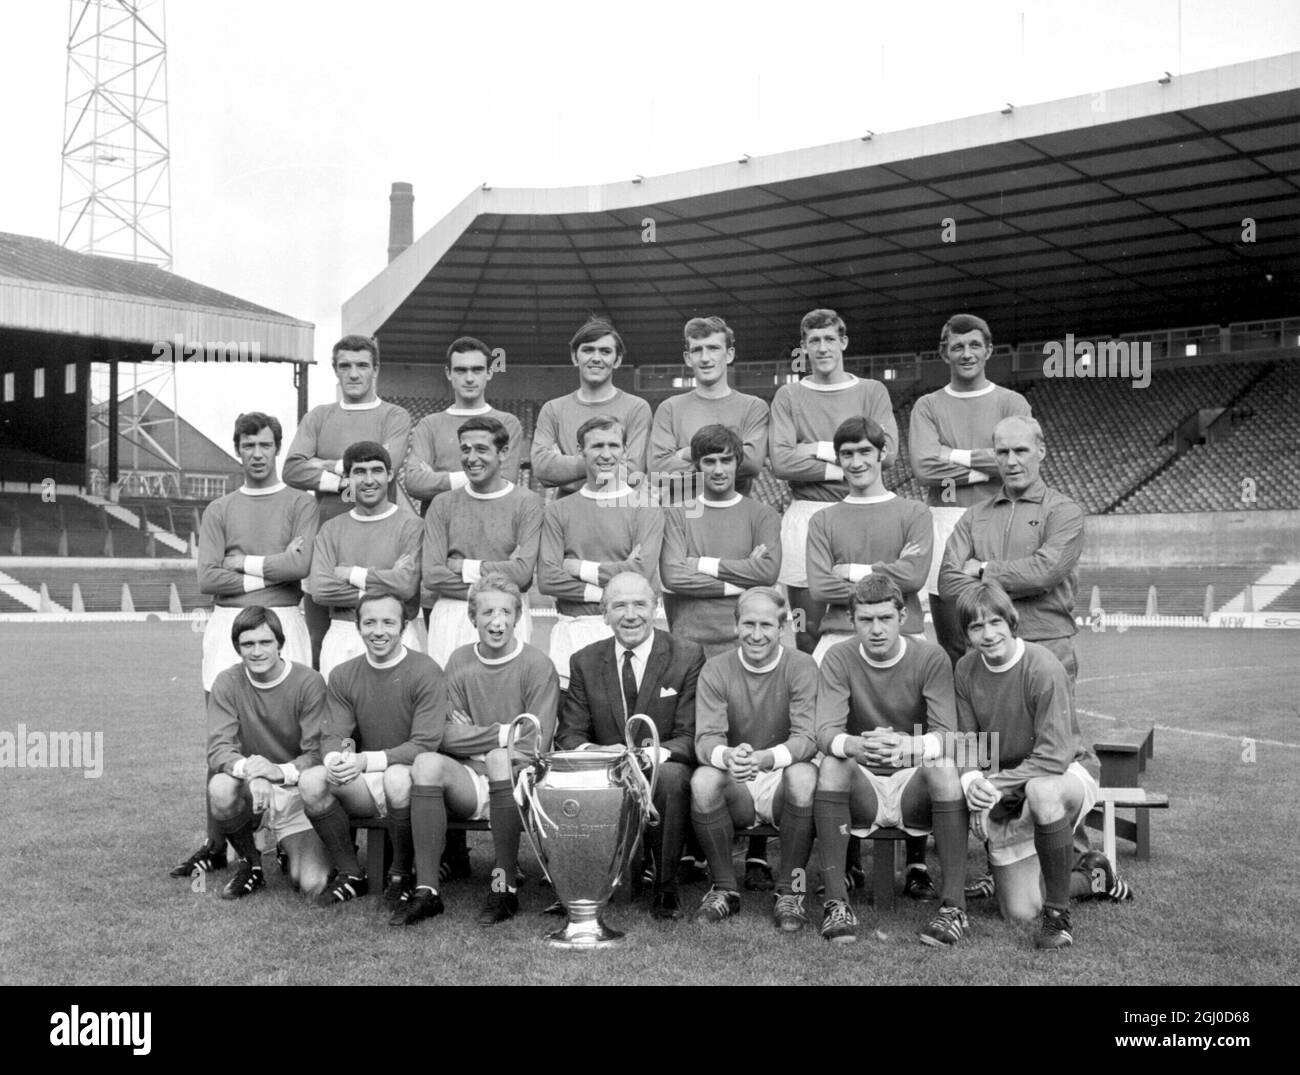 Das Manchester United Football Team vom 26. Juli 1968, hier mit dem European Cup, den sie nach dem Sieg gegen Benfica gewonnen haben. Hintere Reihe L bis R, B.Foulkes, J Aston, J. Rimmer, A. Stepney, A. Gowling, D. Kopf. Center, D. Sadler, T. Dunne, S. Brennan, P.Crerand, G. Best und F. Burns und Trainer J. Crompton. Vorne, J.Ryan, N. Stiles, D. Law, M. Busby. B. Charlton, B. Kidd und J. Fitzpatrick. Stockfoto